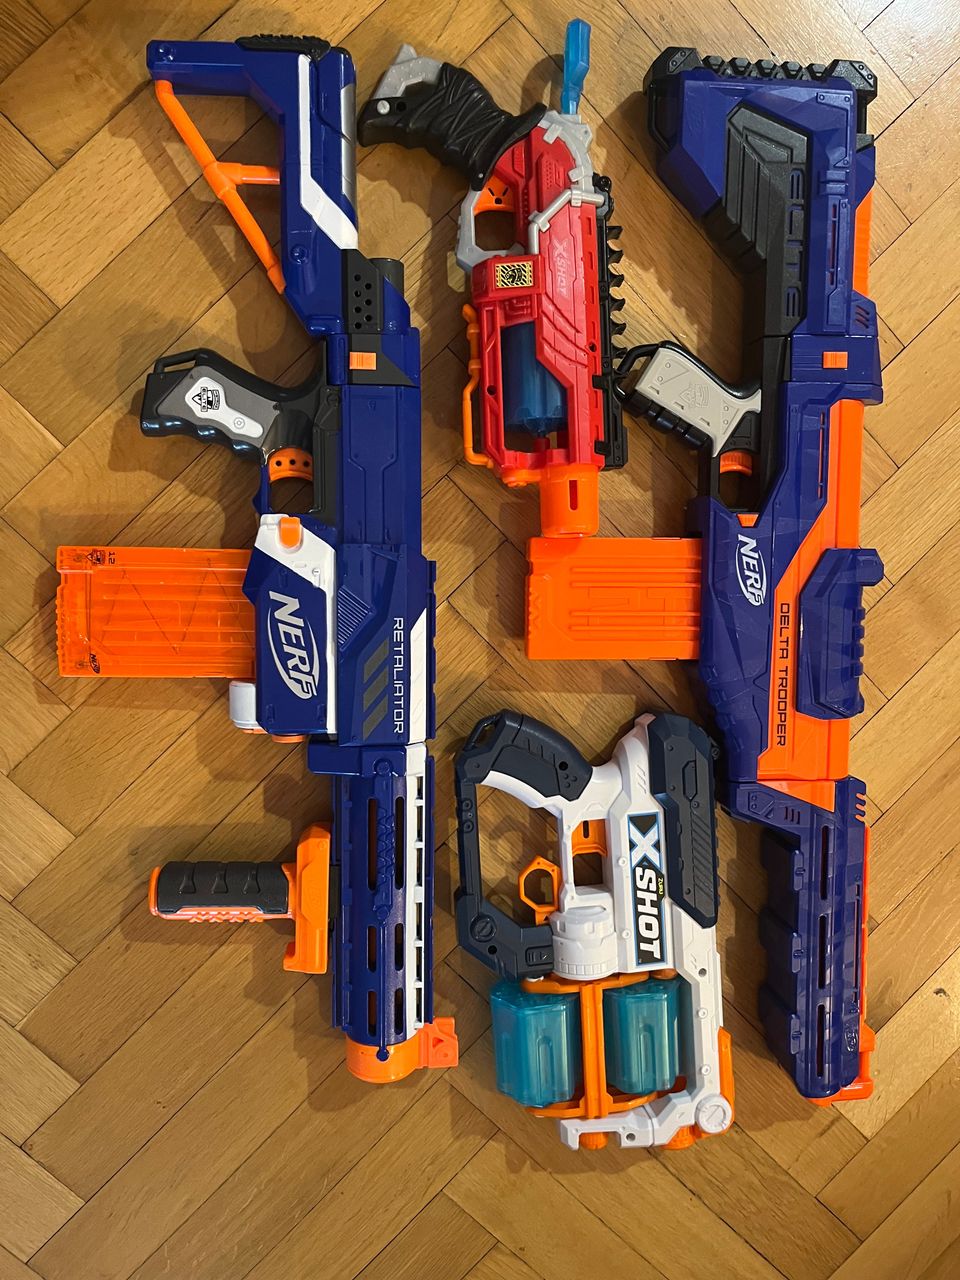 2 kpl Nerf-aseita ja 2 kpl X-Shot -aseita